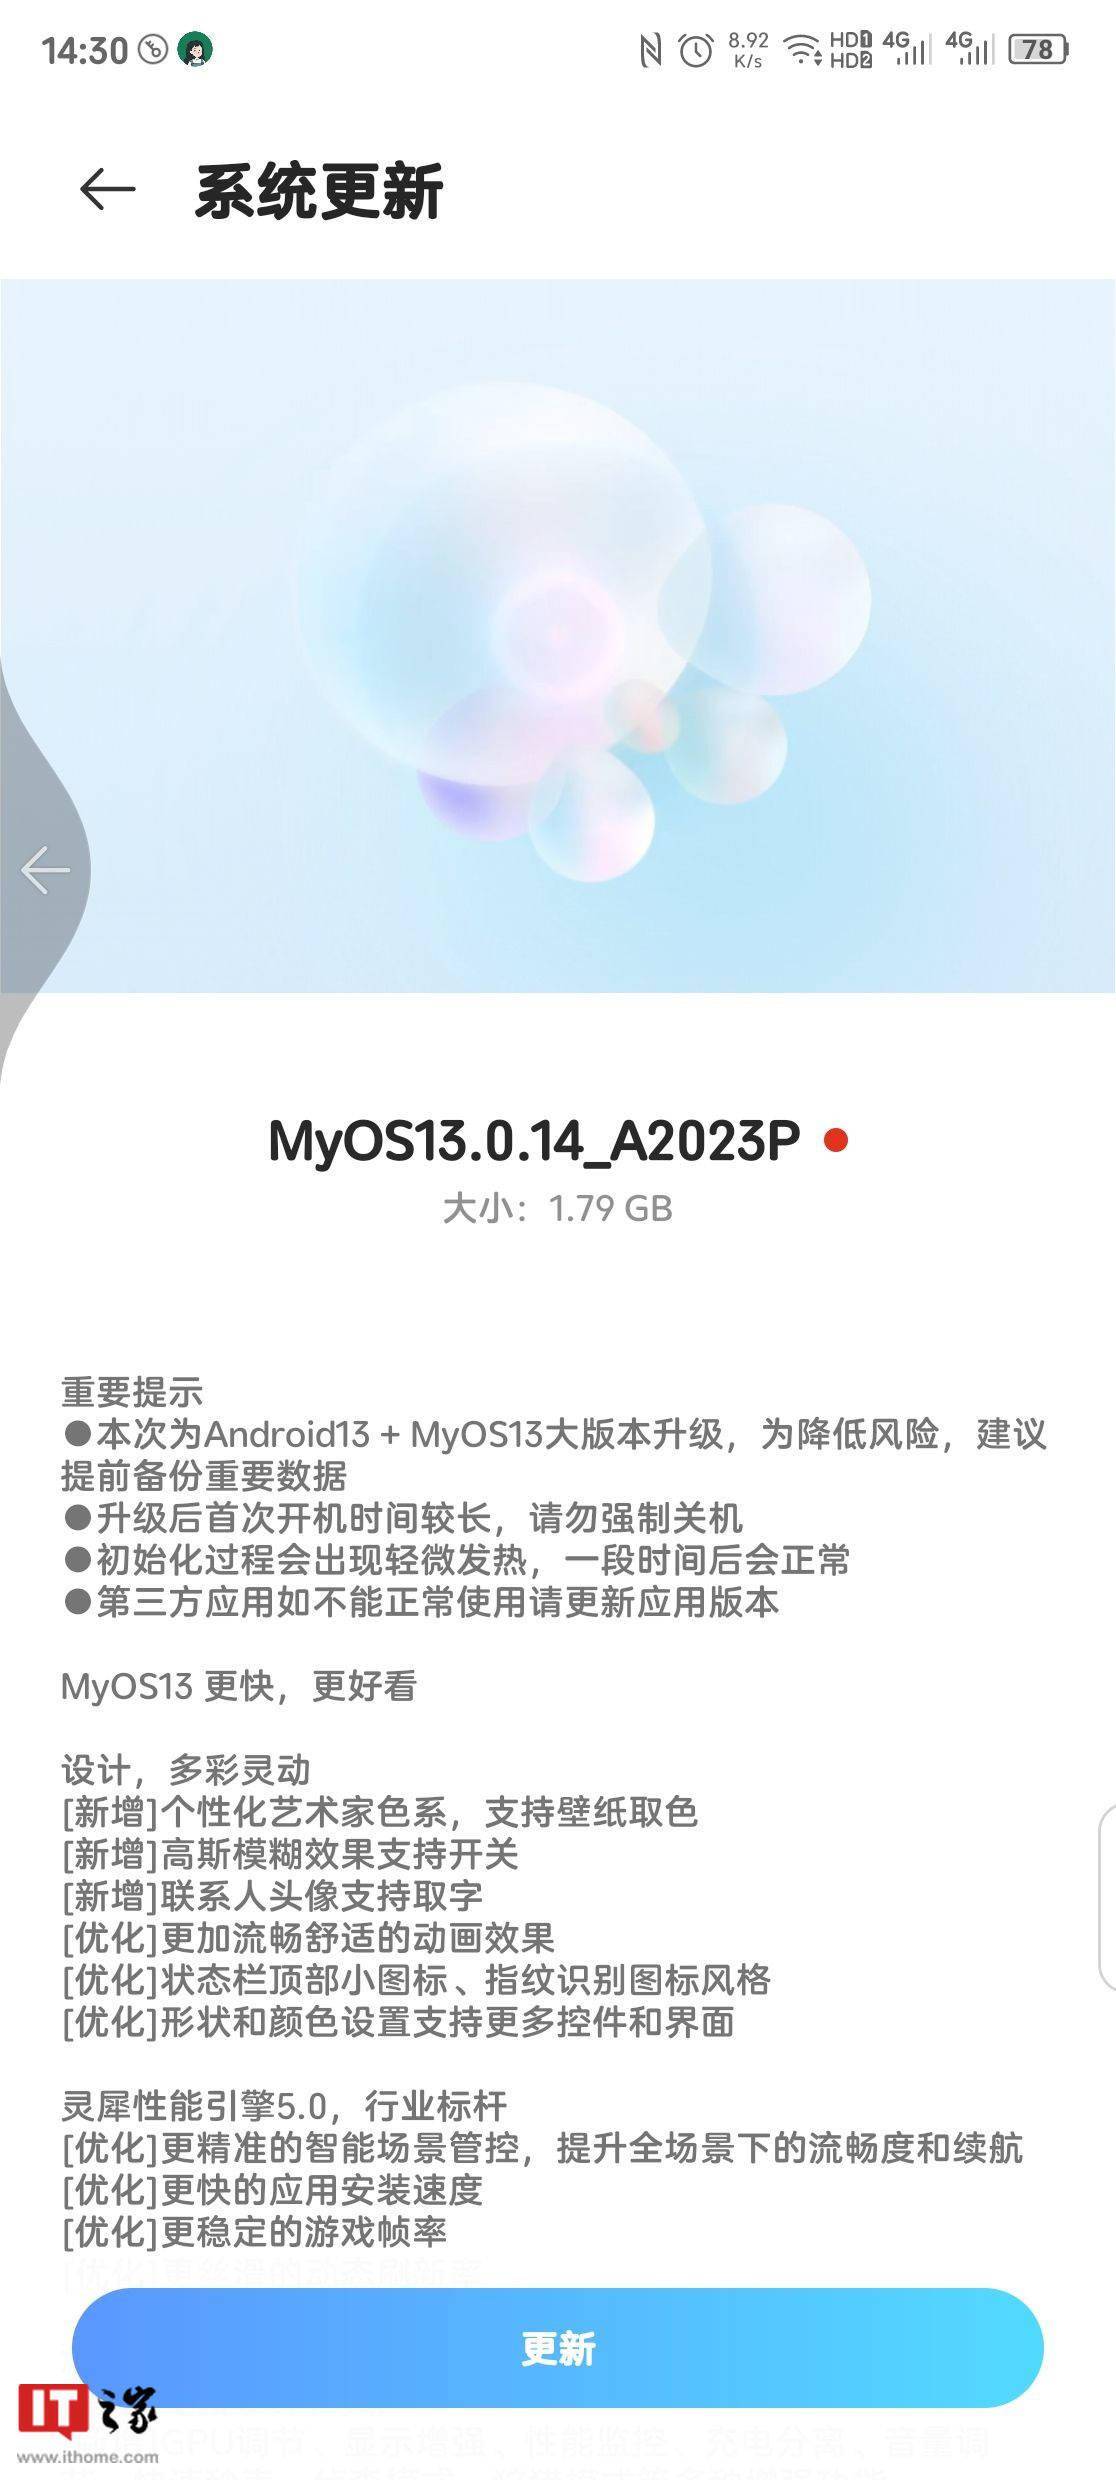 中兴 Axon 40 Ultra机型将开启 MyOS 13 稳定版公测招募计划